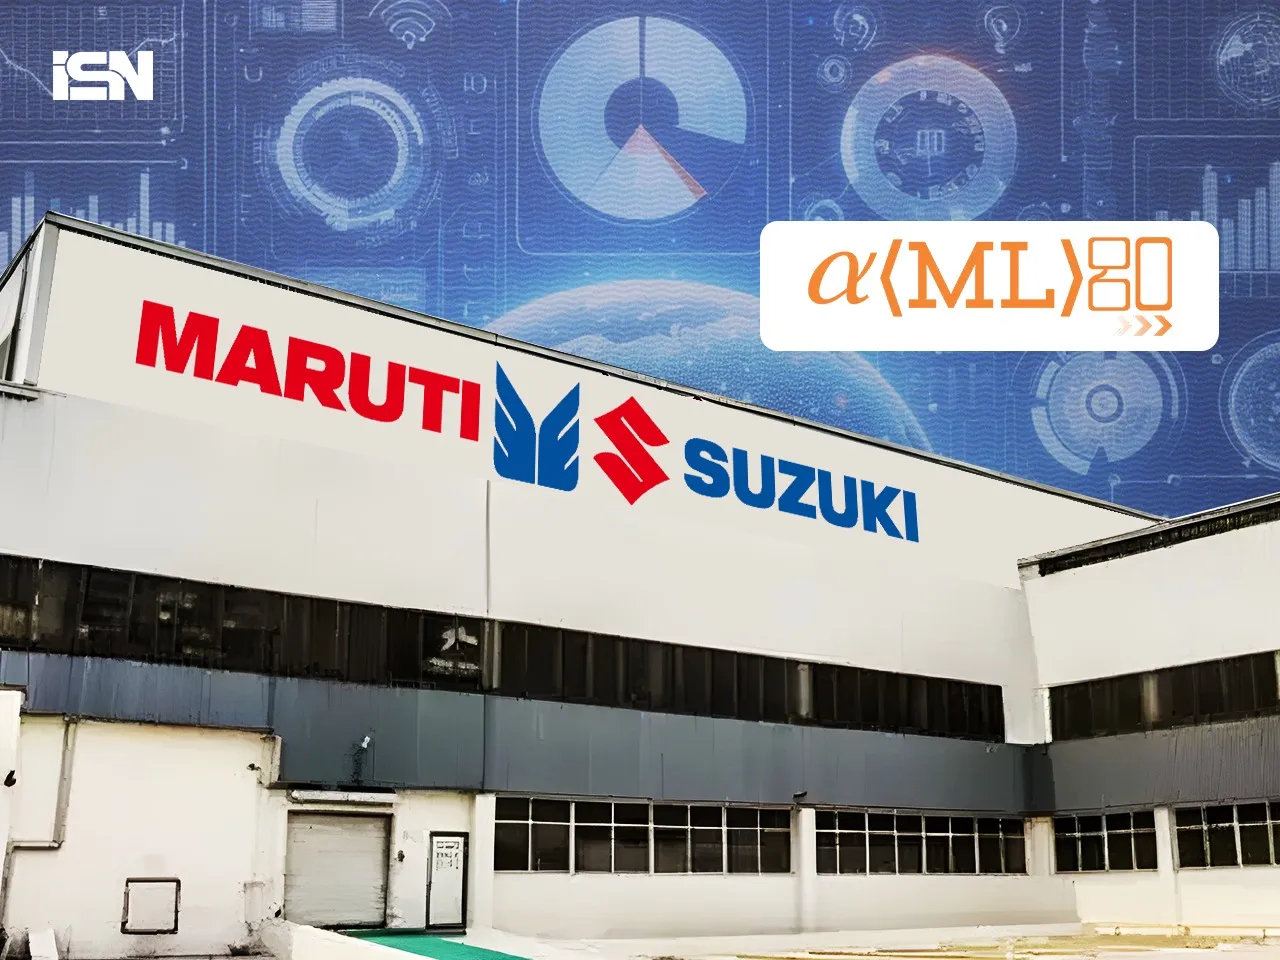 Automobile major Maruti Suzuki acquires 6.4% stake in AI startup Amlgo for Rs 1.99 crore